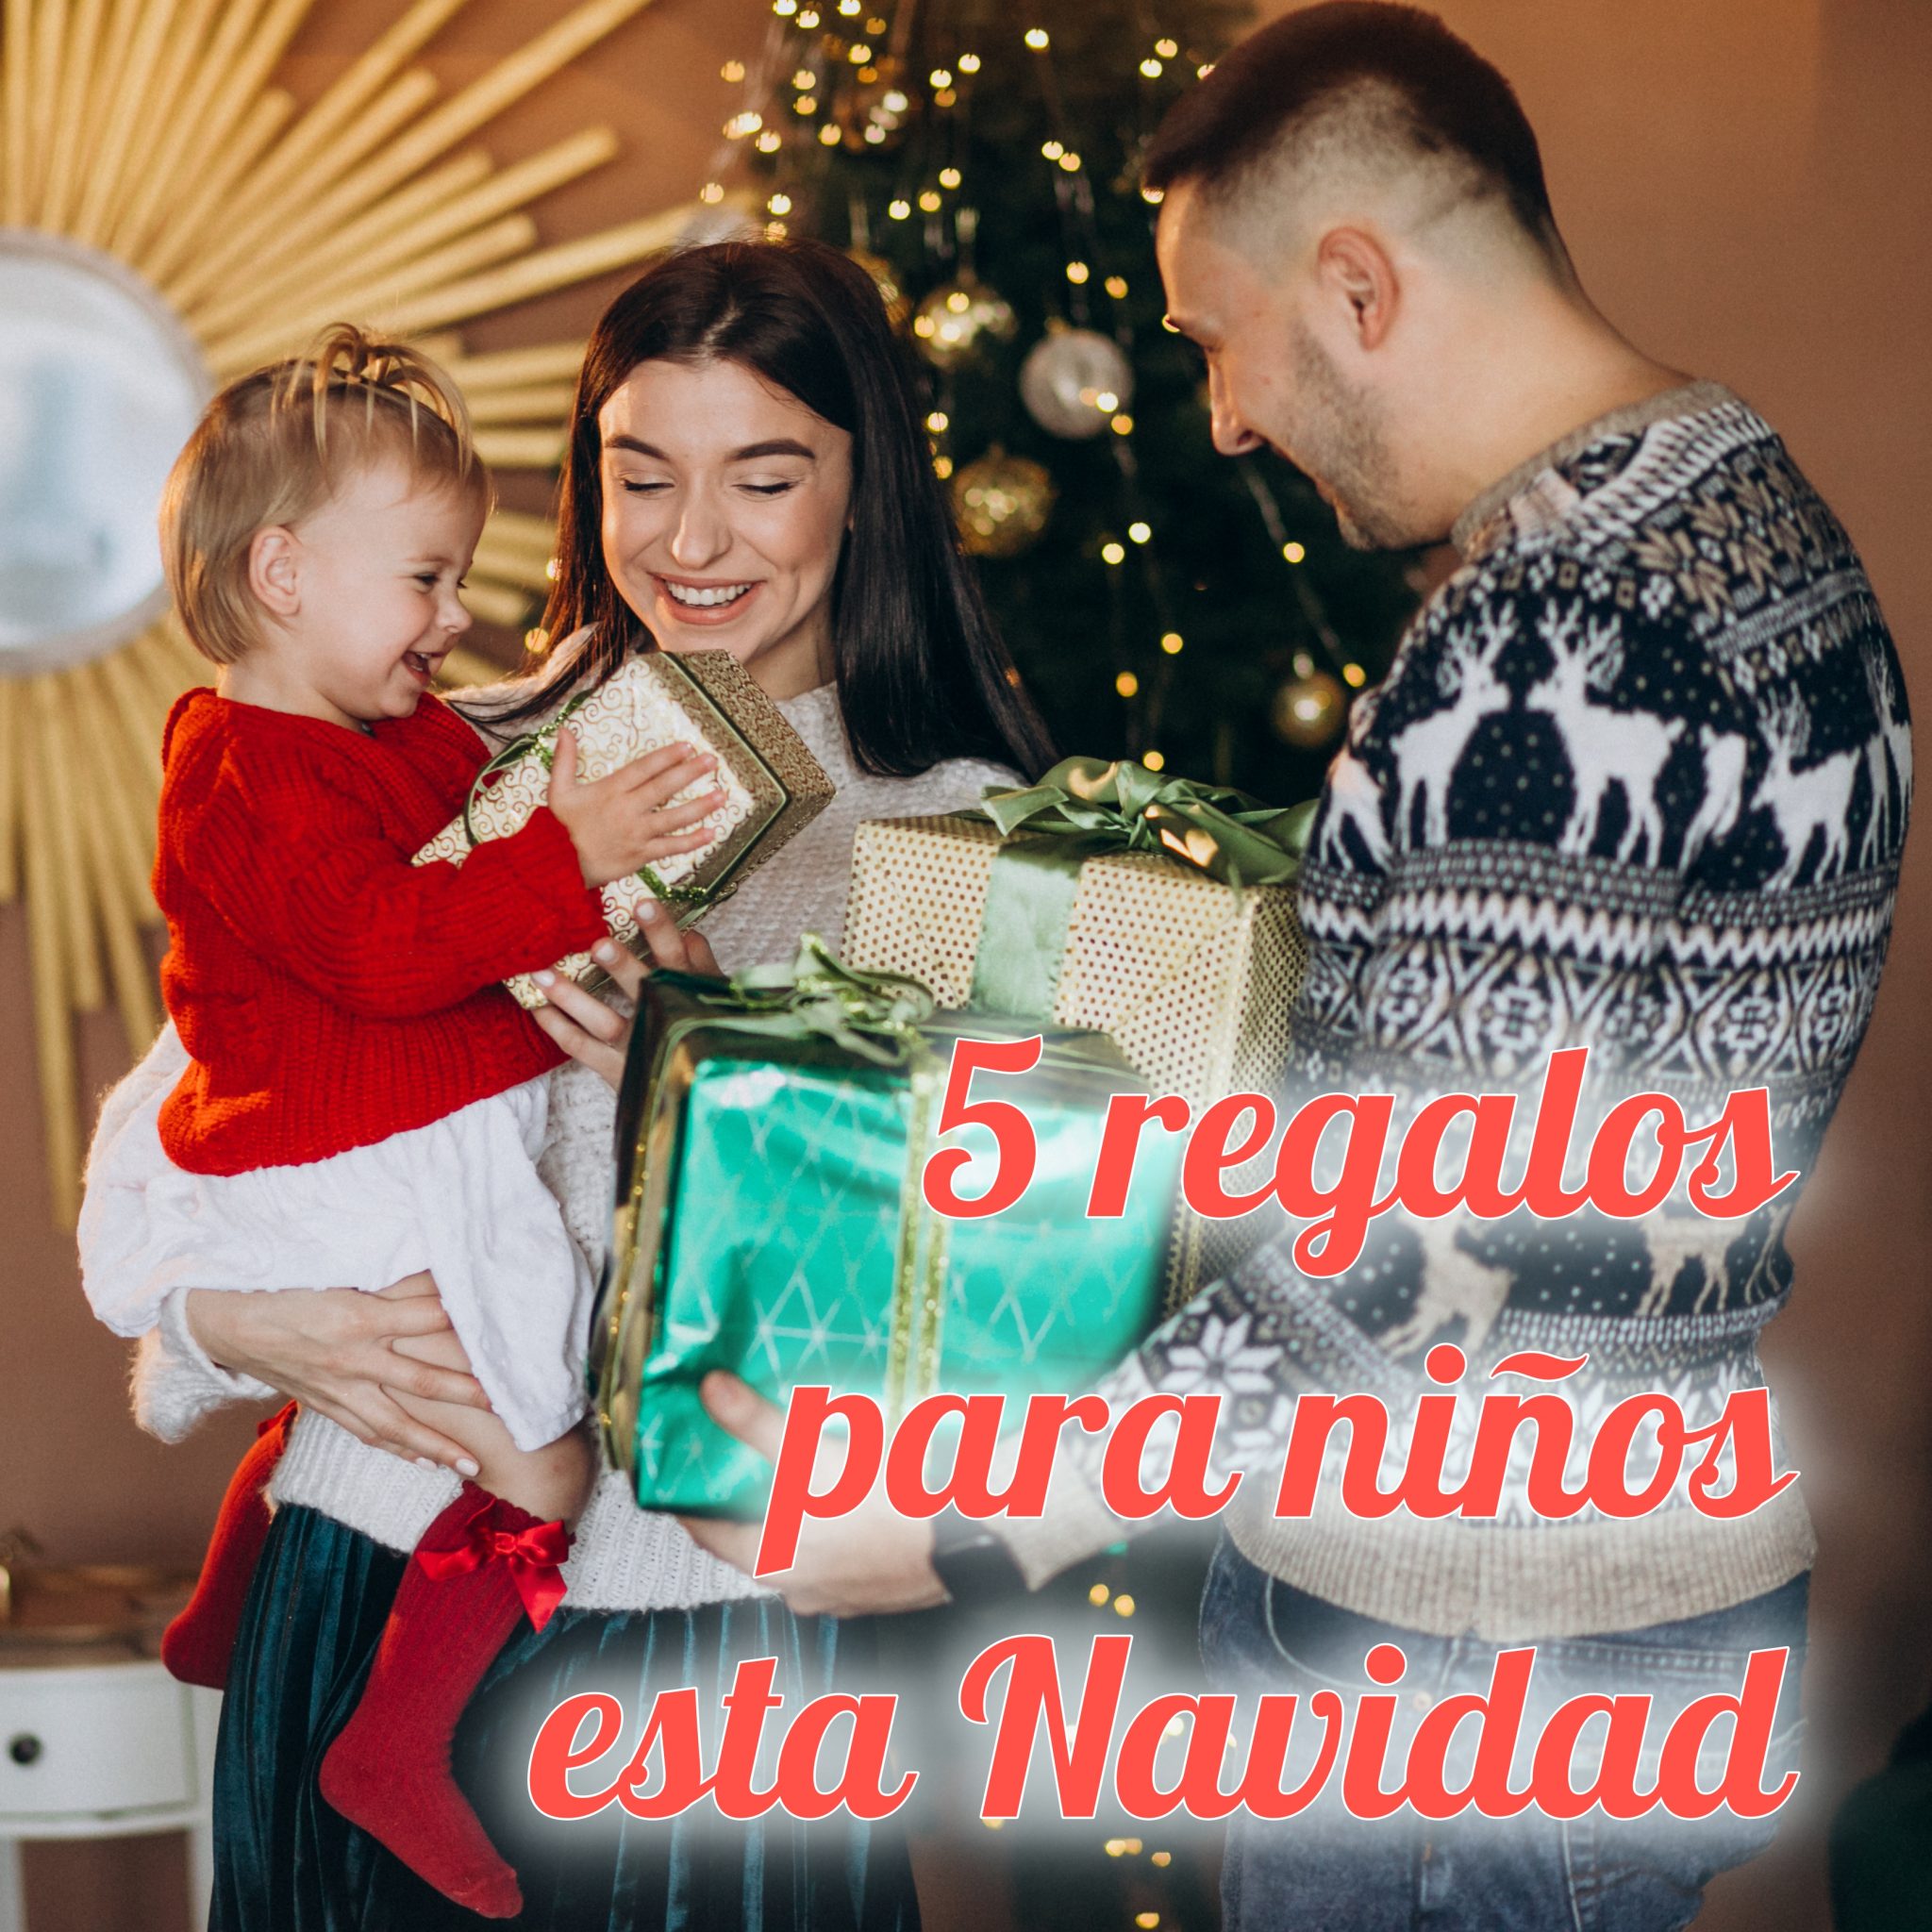 5 regalos estrella para niños esta Navidad